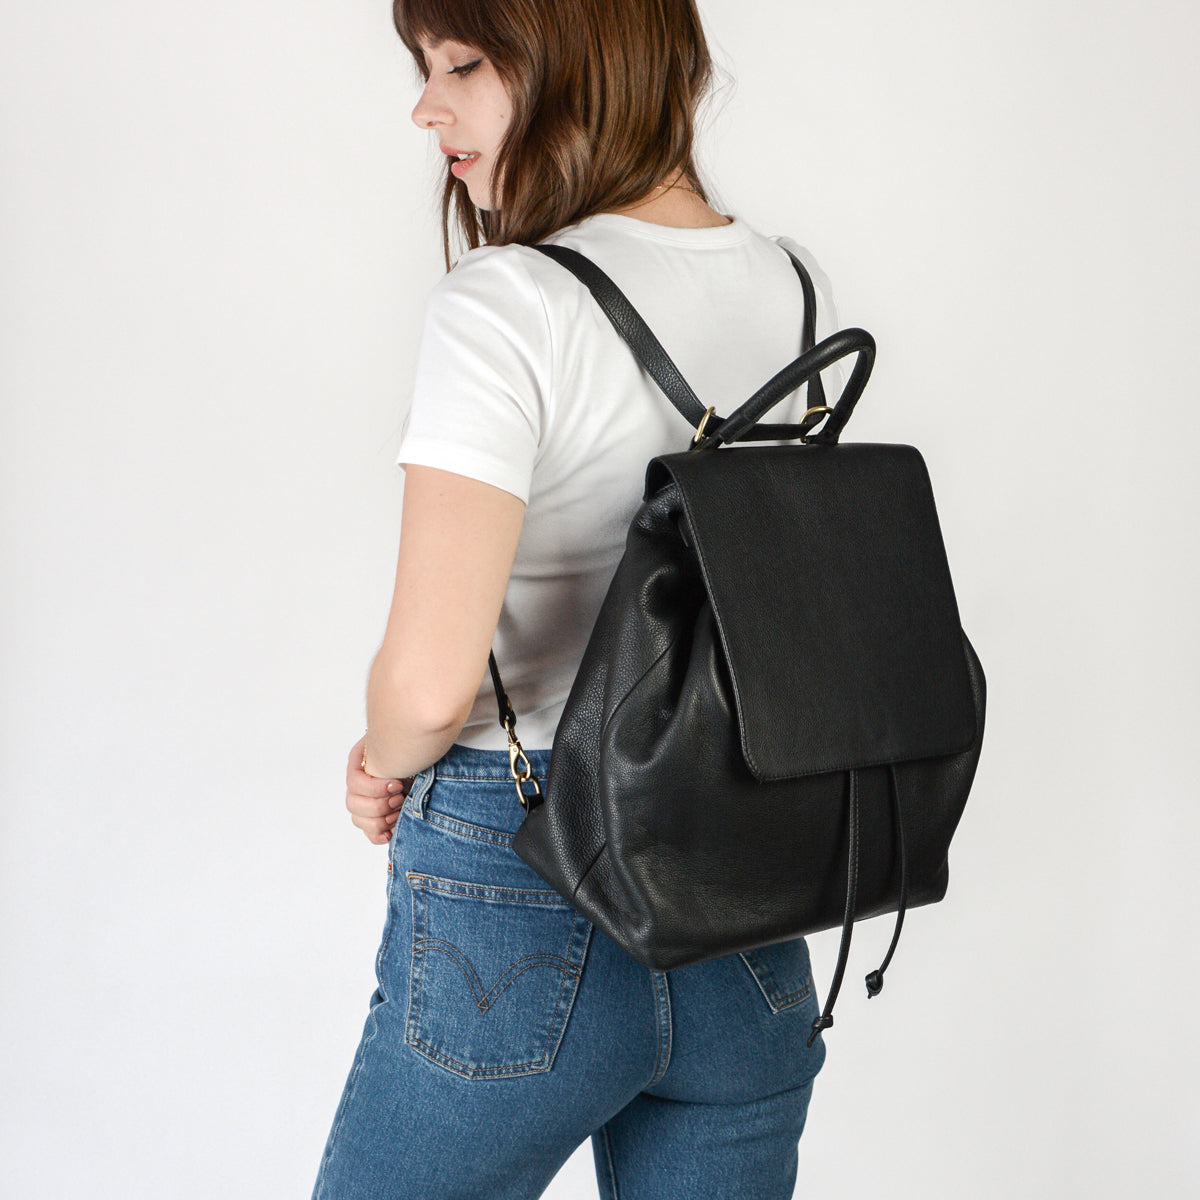 Rag & Bone - Women's Commuter Mini Hobo Bag - Black - Leather